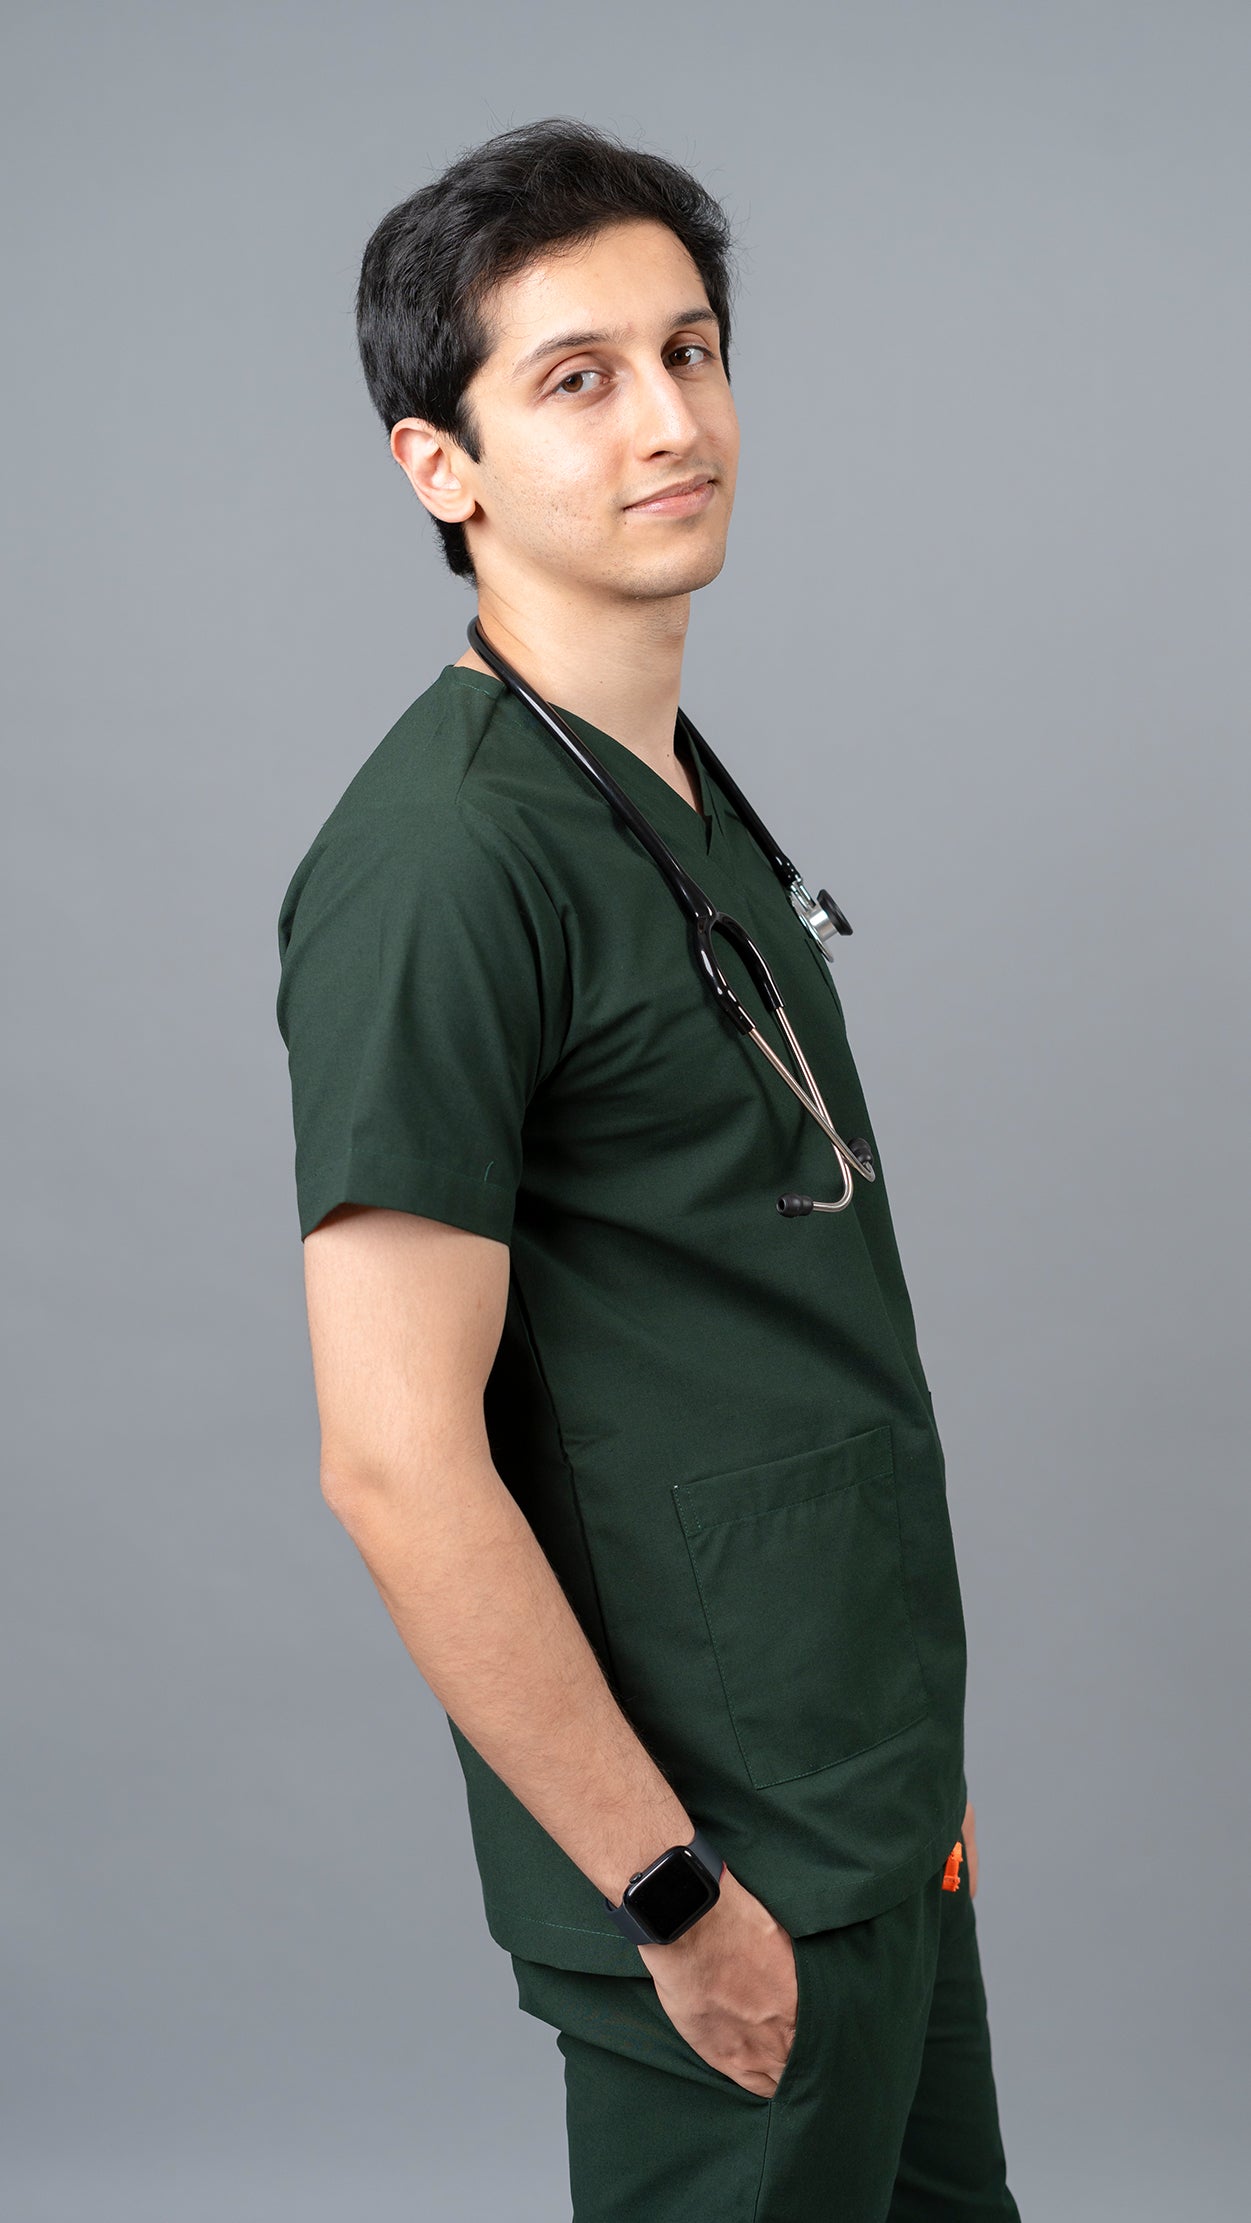 Vastramedwear Medical Scrub Suit for Doctors Men Green